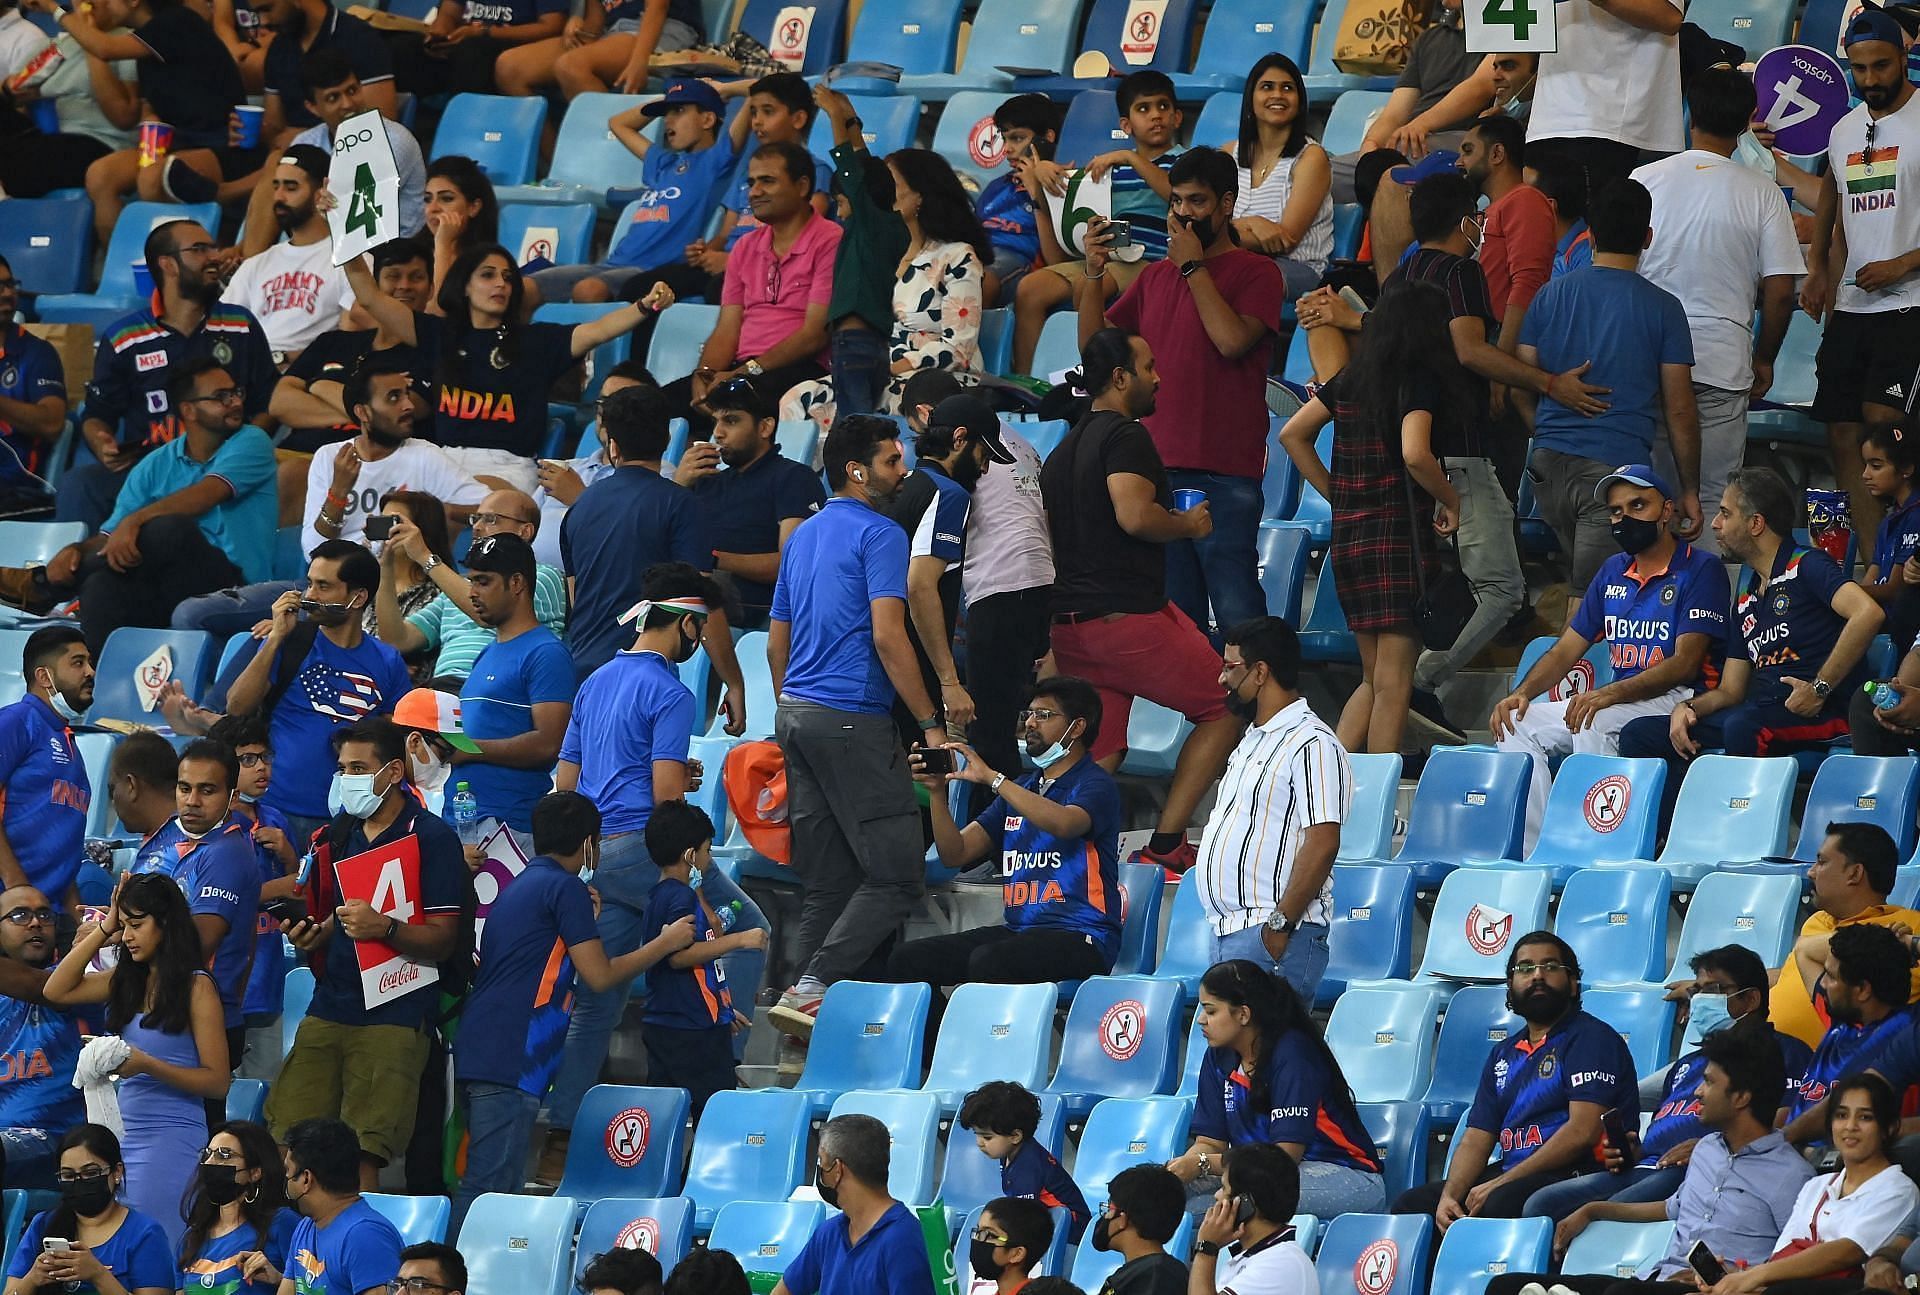 भारतीय टीम की लगातार दो हार के बाद फैंस काफी निराश हैं